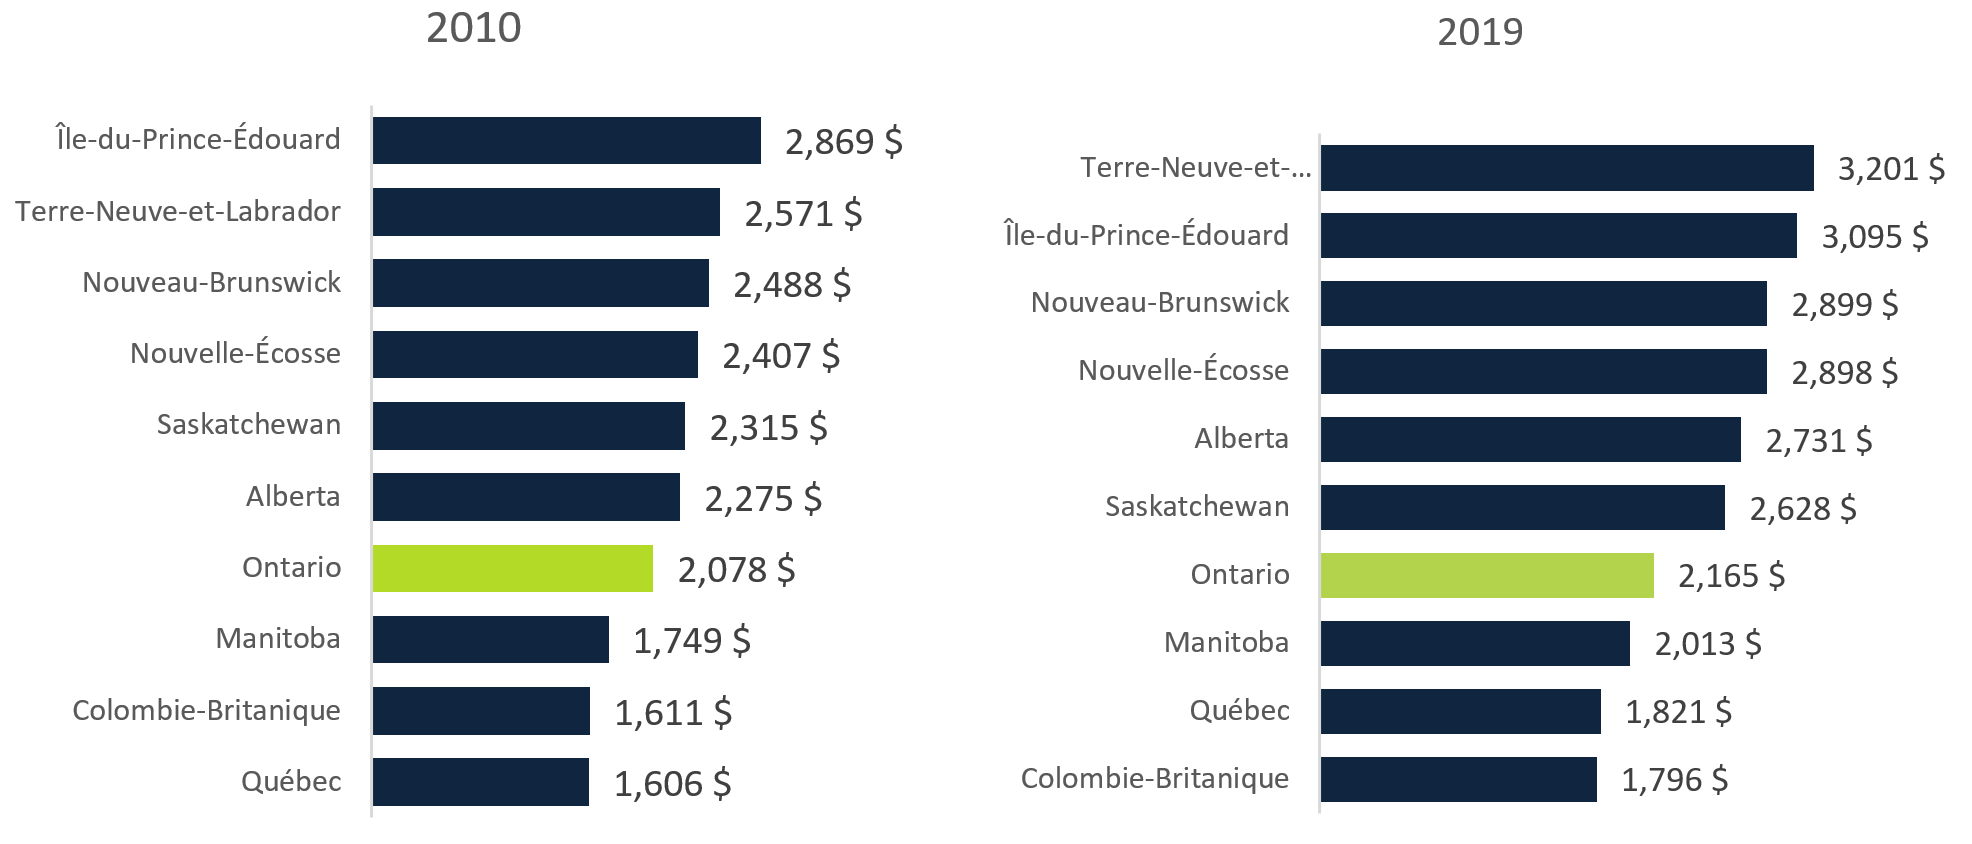 Dépenses annuelles moyennes des ménages pour l'énergie domestique, par province, 2010 et 2019